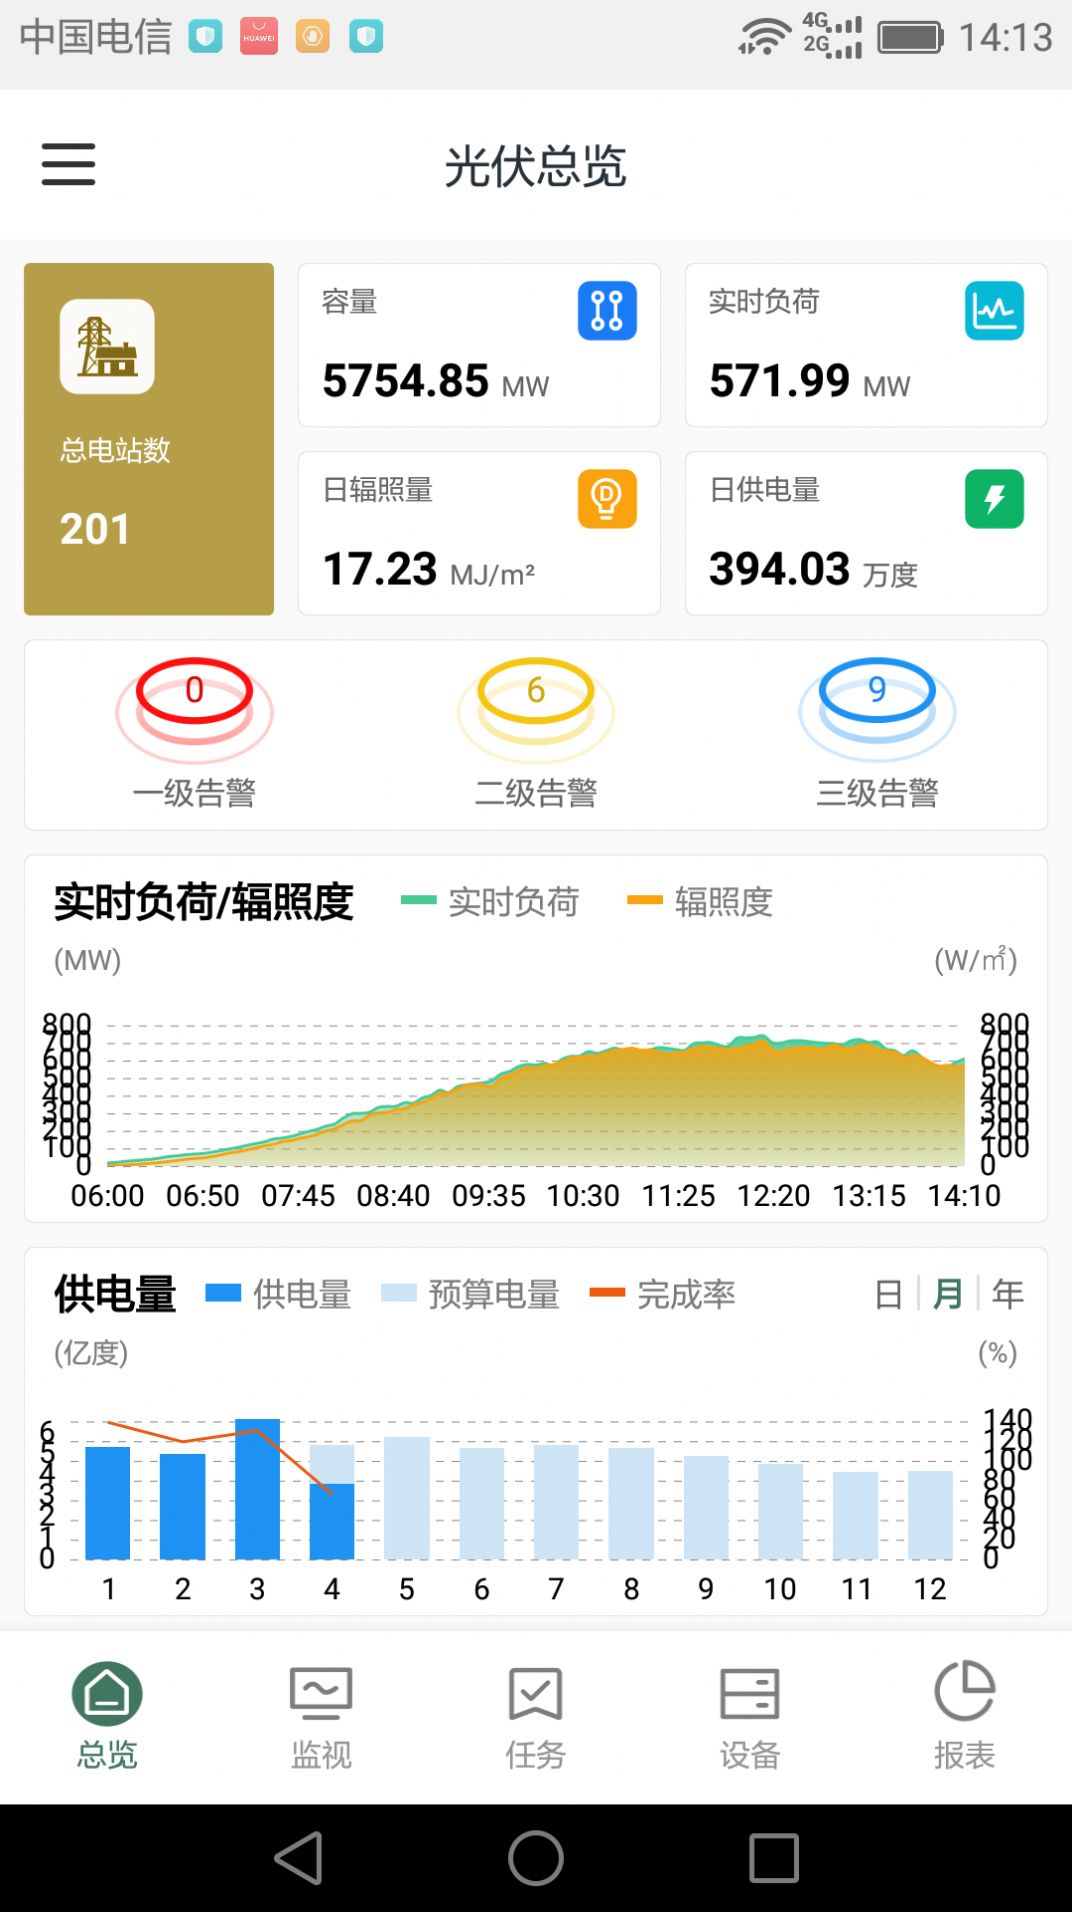 鑫翼连运维管理系统企业版app